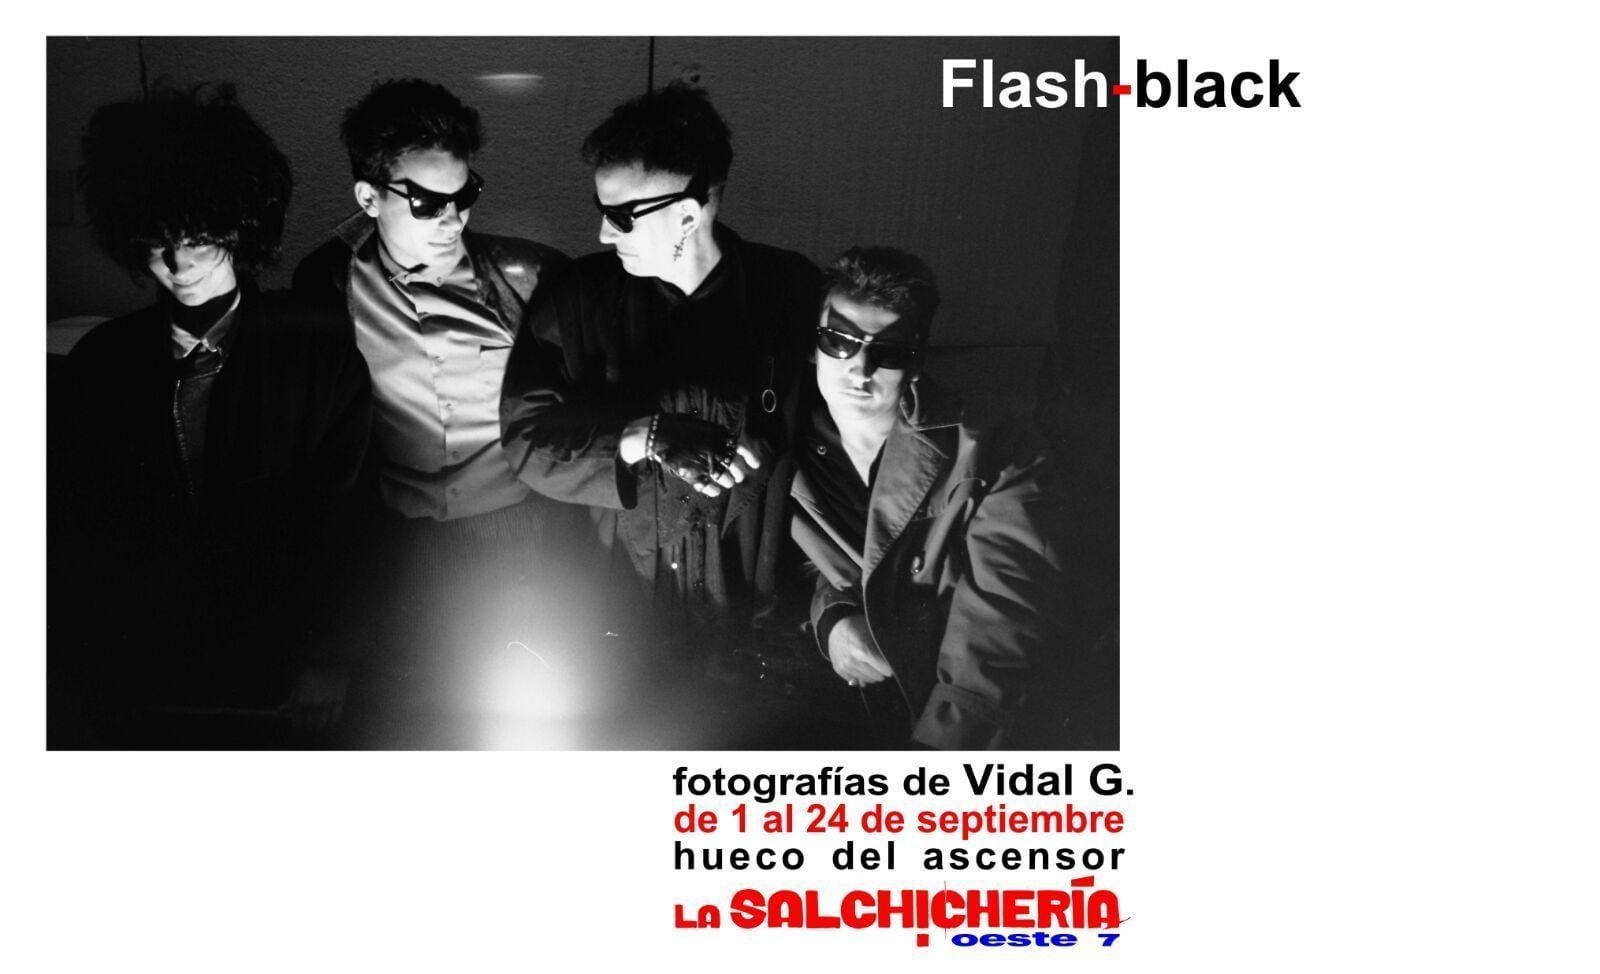 Exposición de fotografía de Vidal G. en La Salchichería.